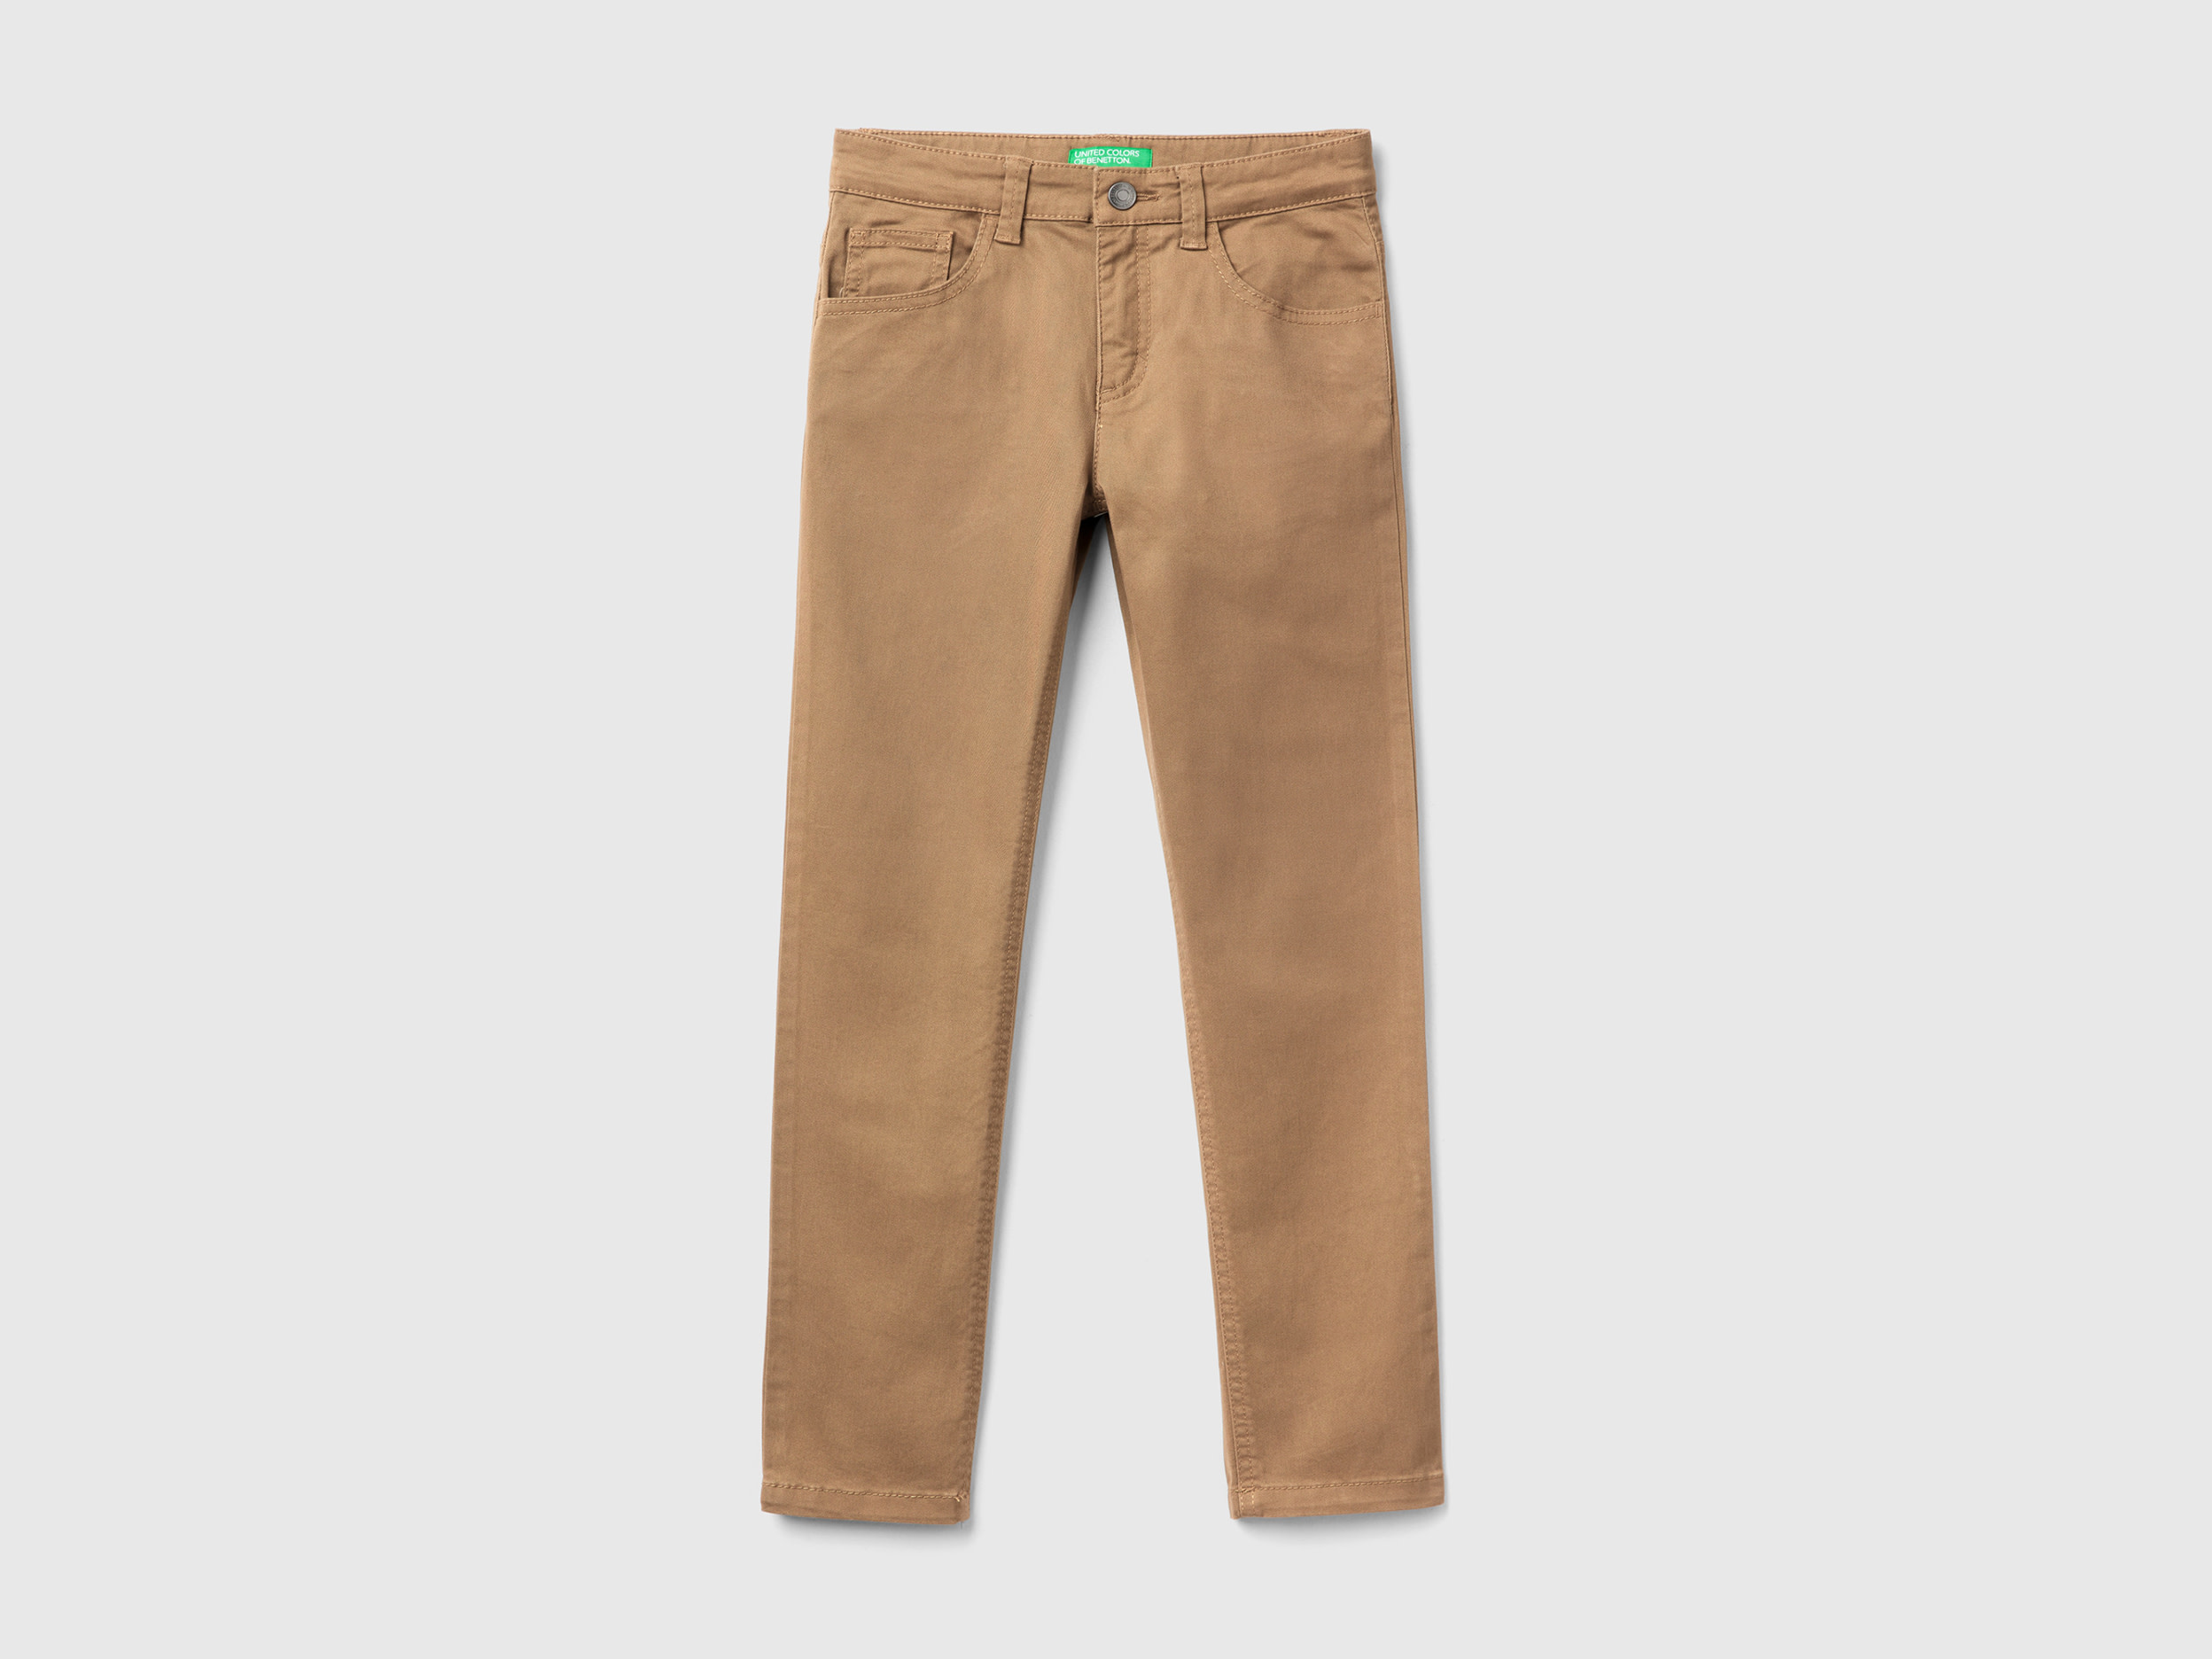 Benetton, Five-pocket Slim Fit Trousers, size 3XL, Beige, Kids